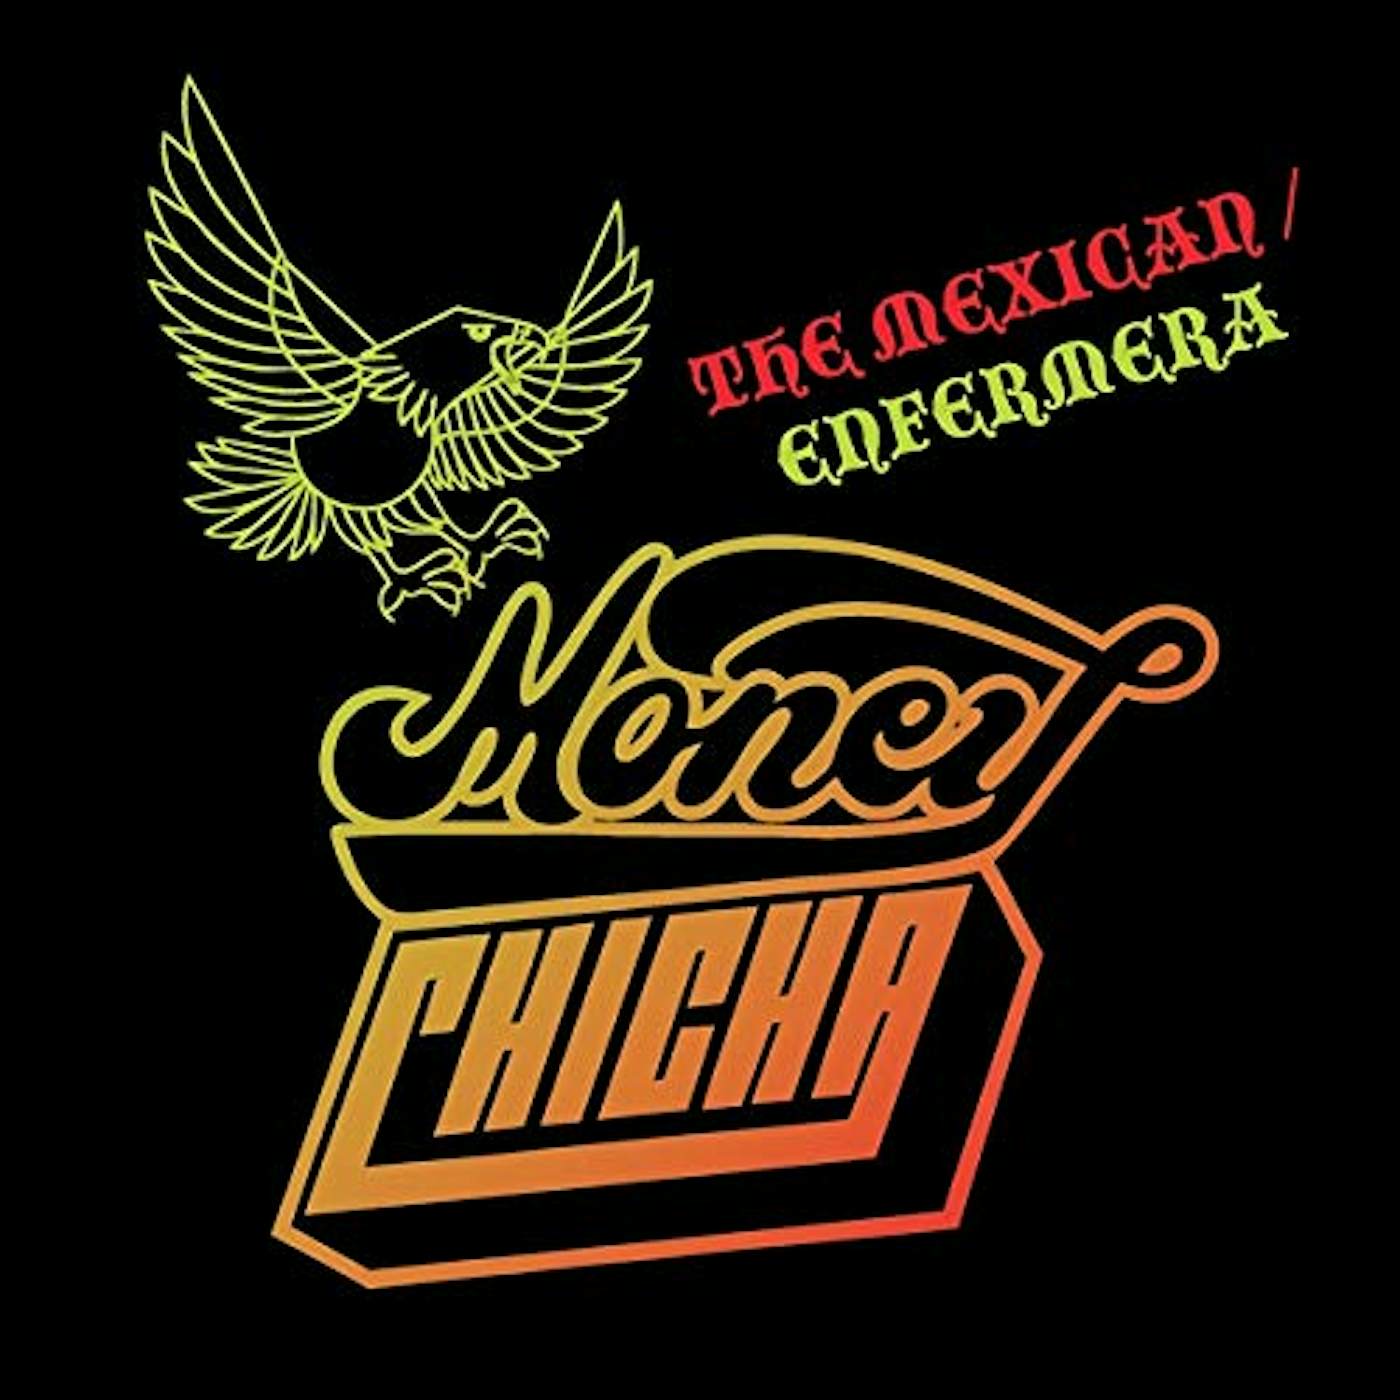 Money Chicha MEXICAN / ENFERMERA Vinyl Record